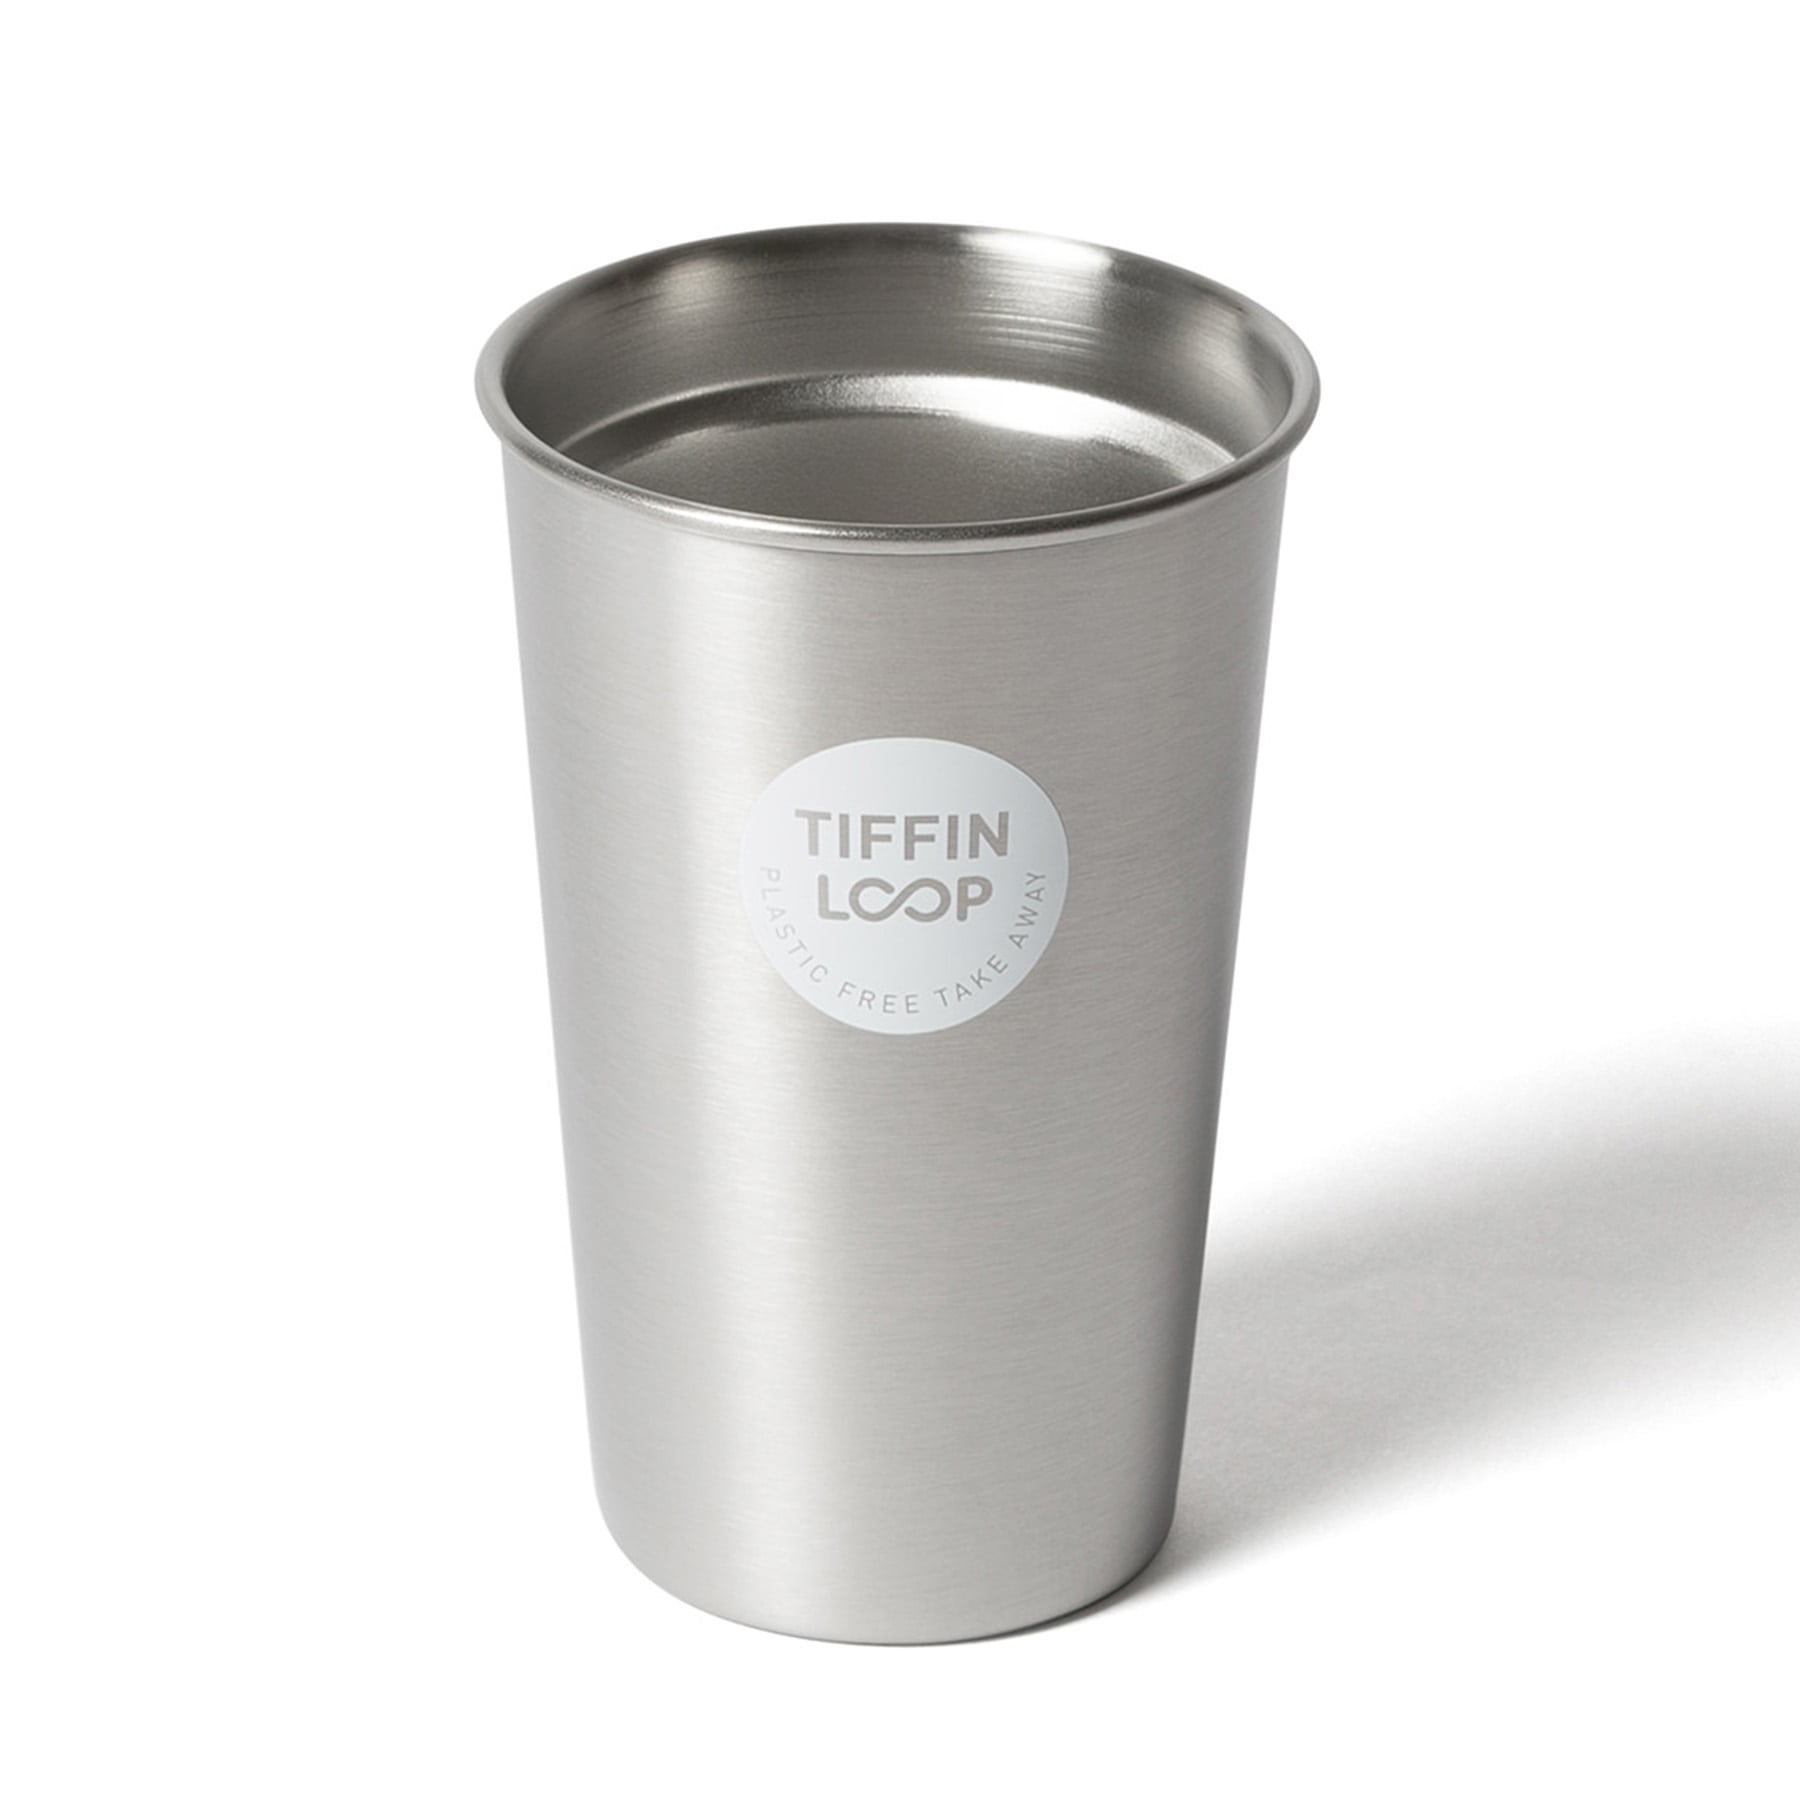 TIFFIN LOOP Cup